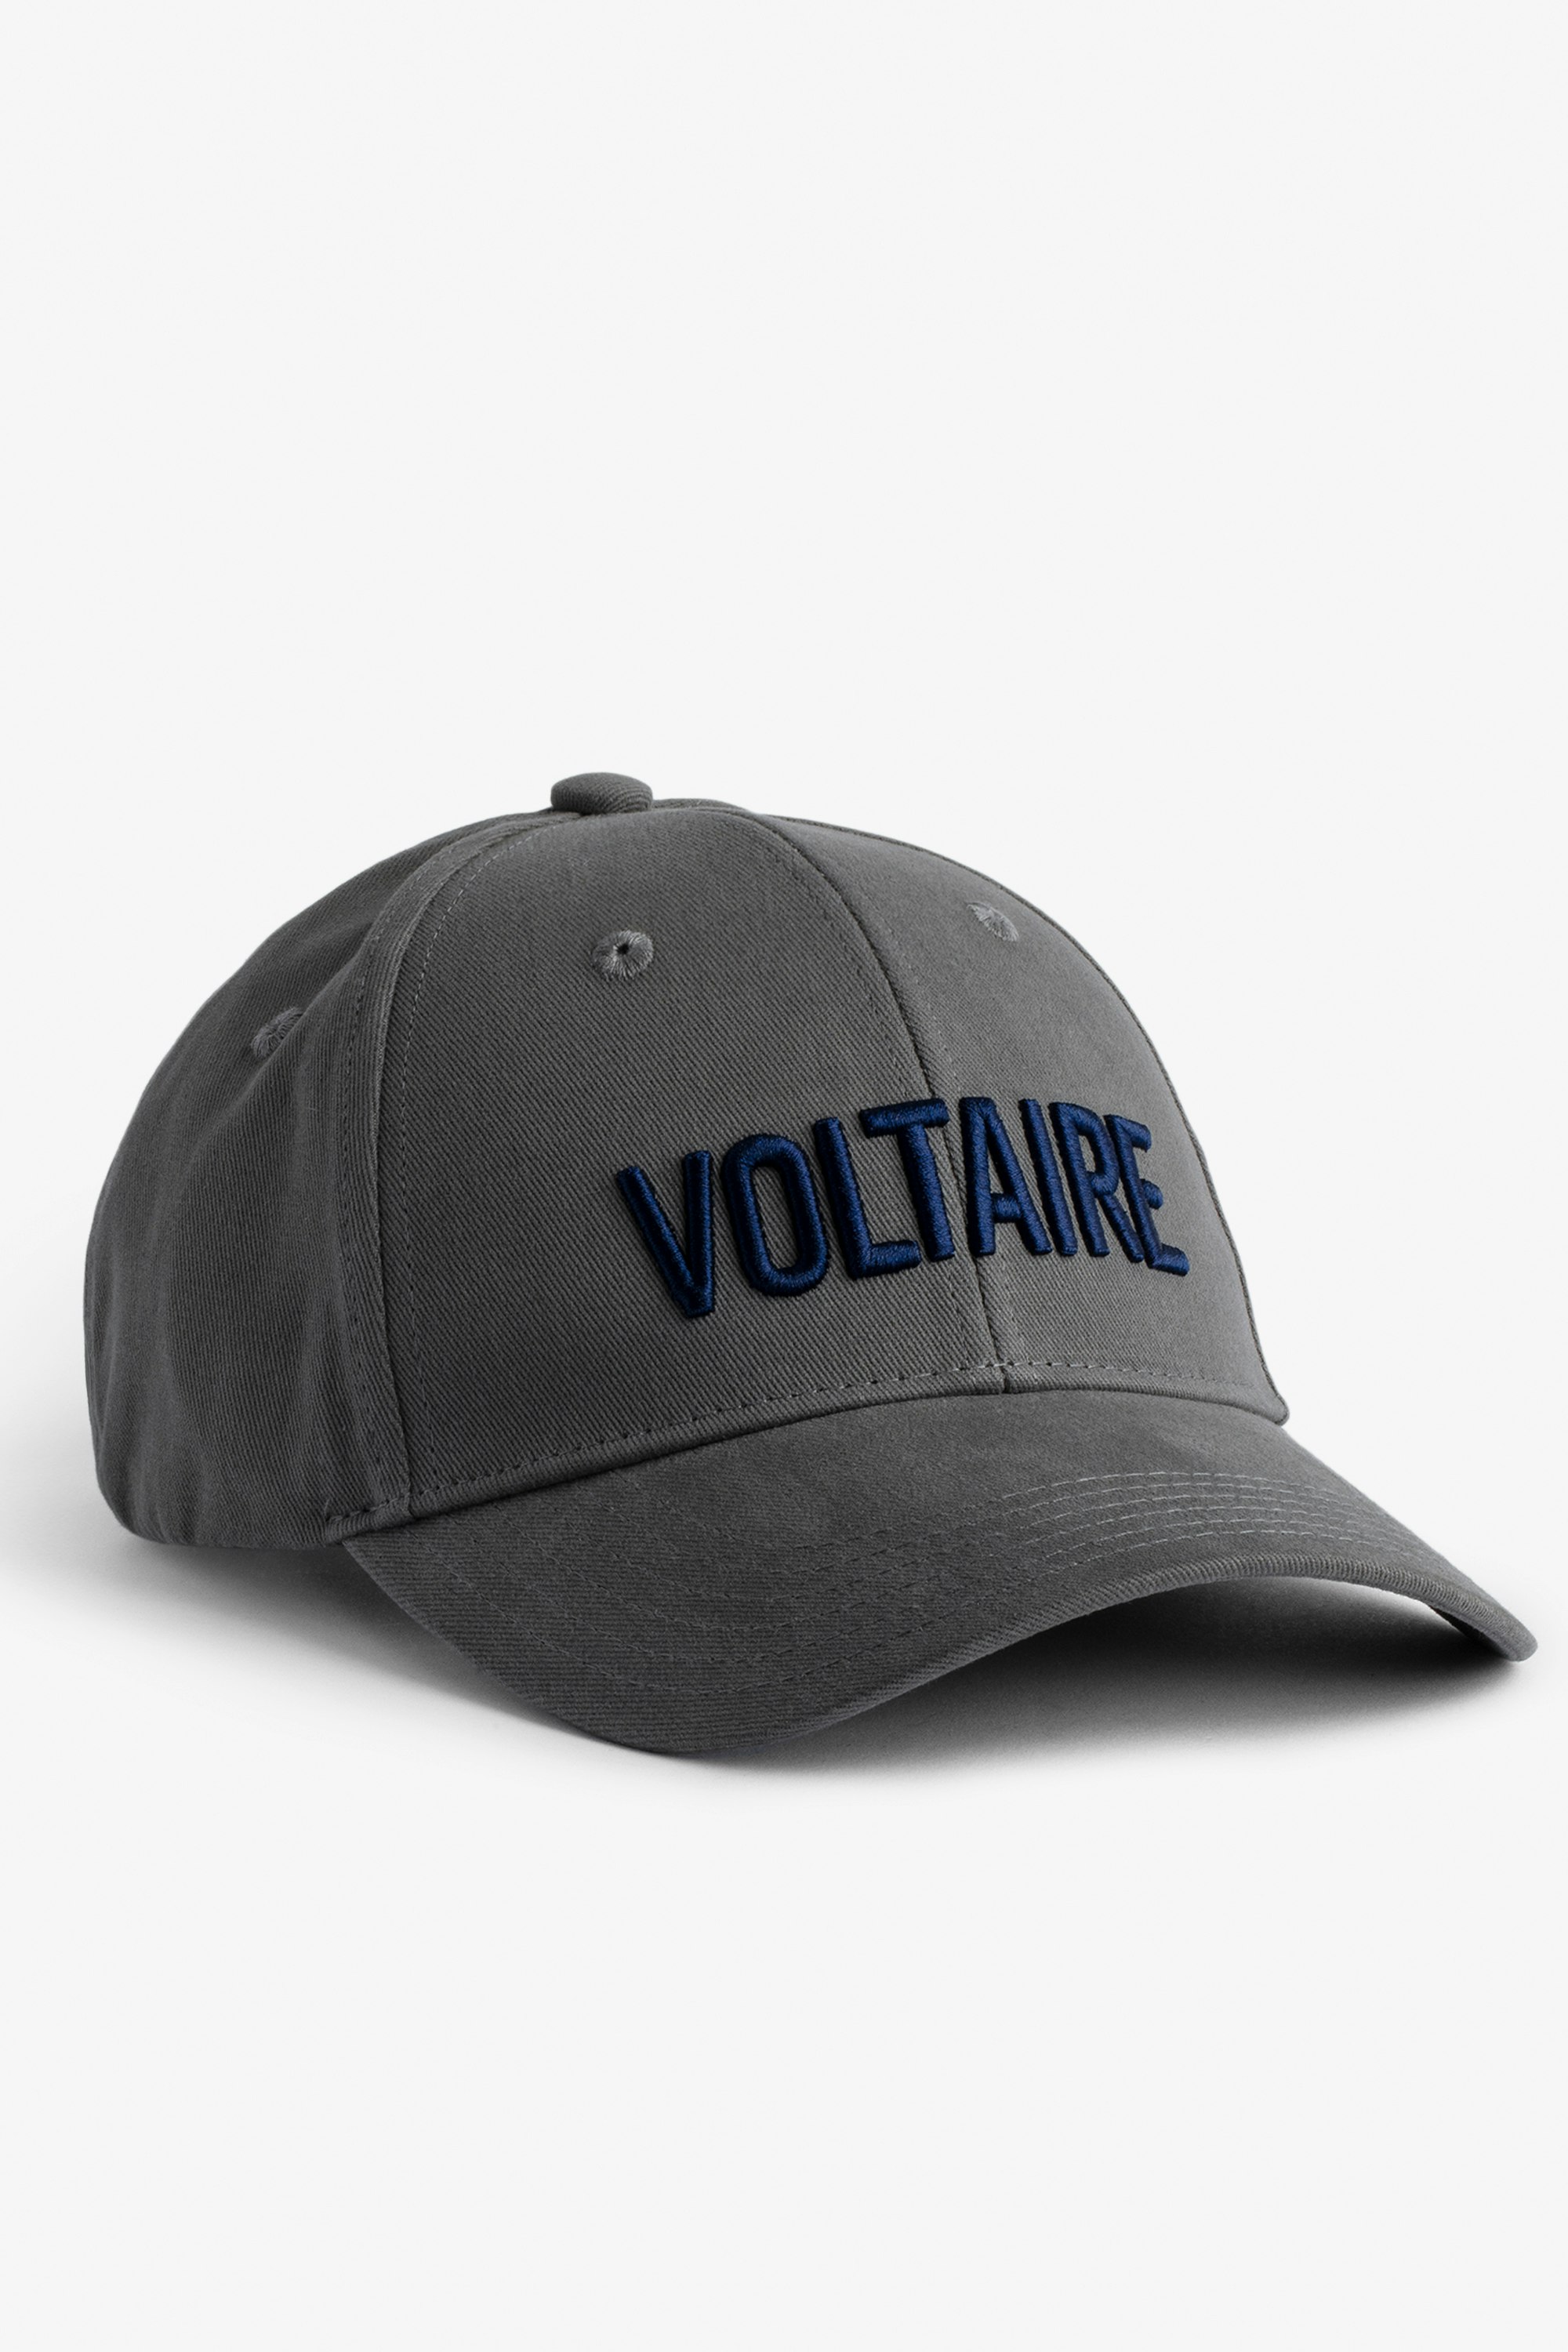 Klelia Voltaire キャップ グレーコットン 「Voltaire」刺繍入りキャップ メンズ